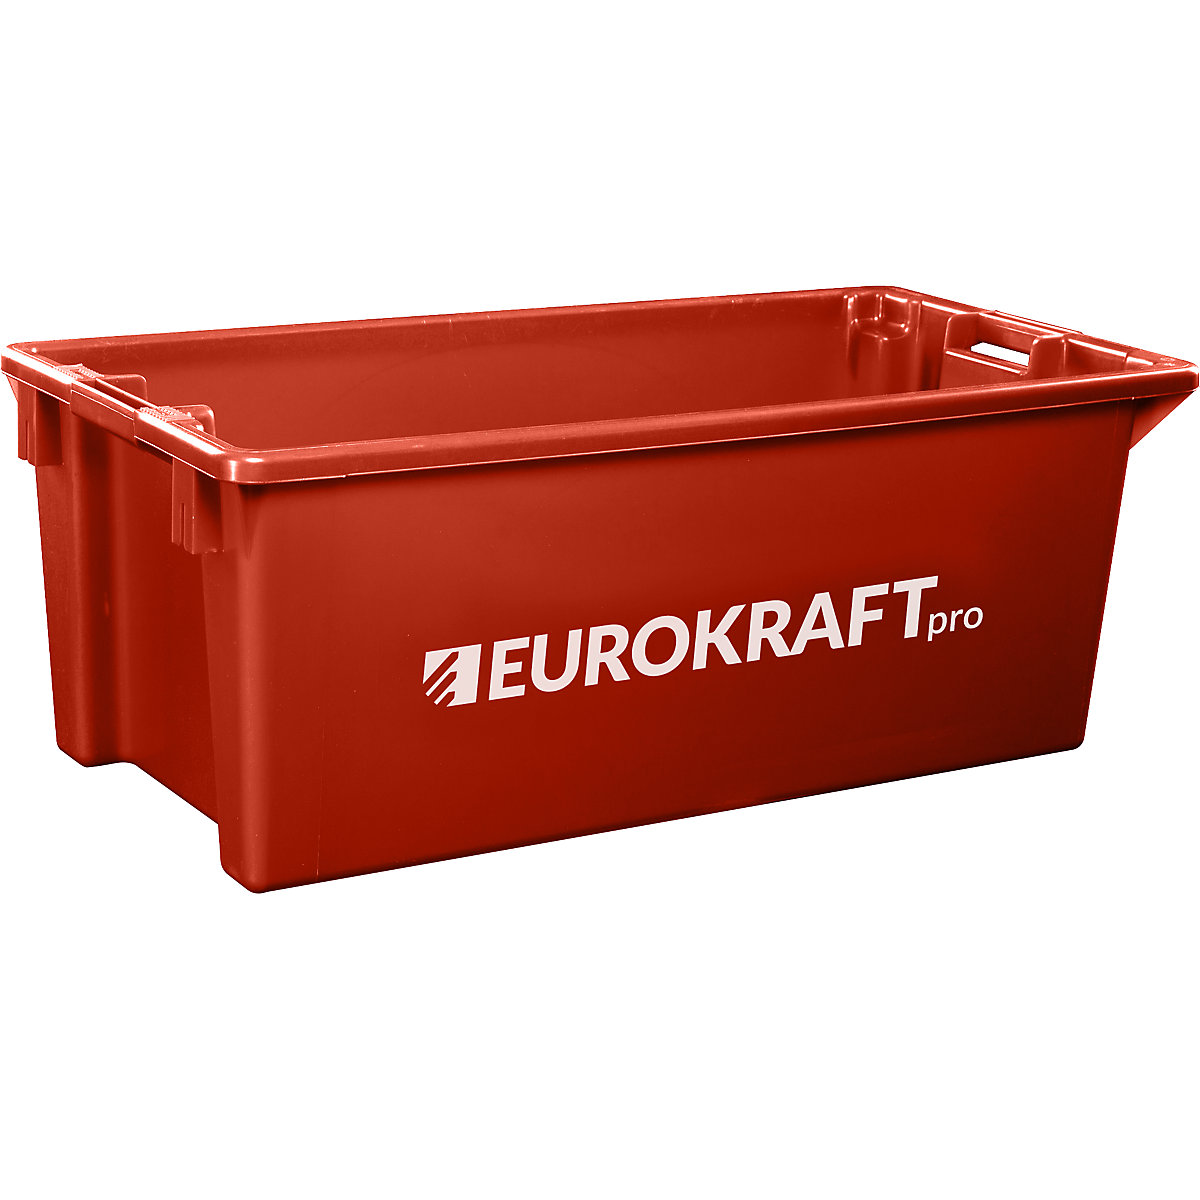 Recipiente empilhável giratório em polipropileno próprio para alimentos – eurokraft pro, capacidade 13 litros, UE 4 unid., paredes e fundo fechados, vermelho